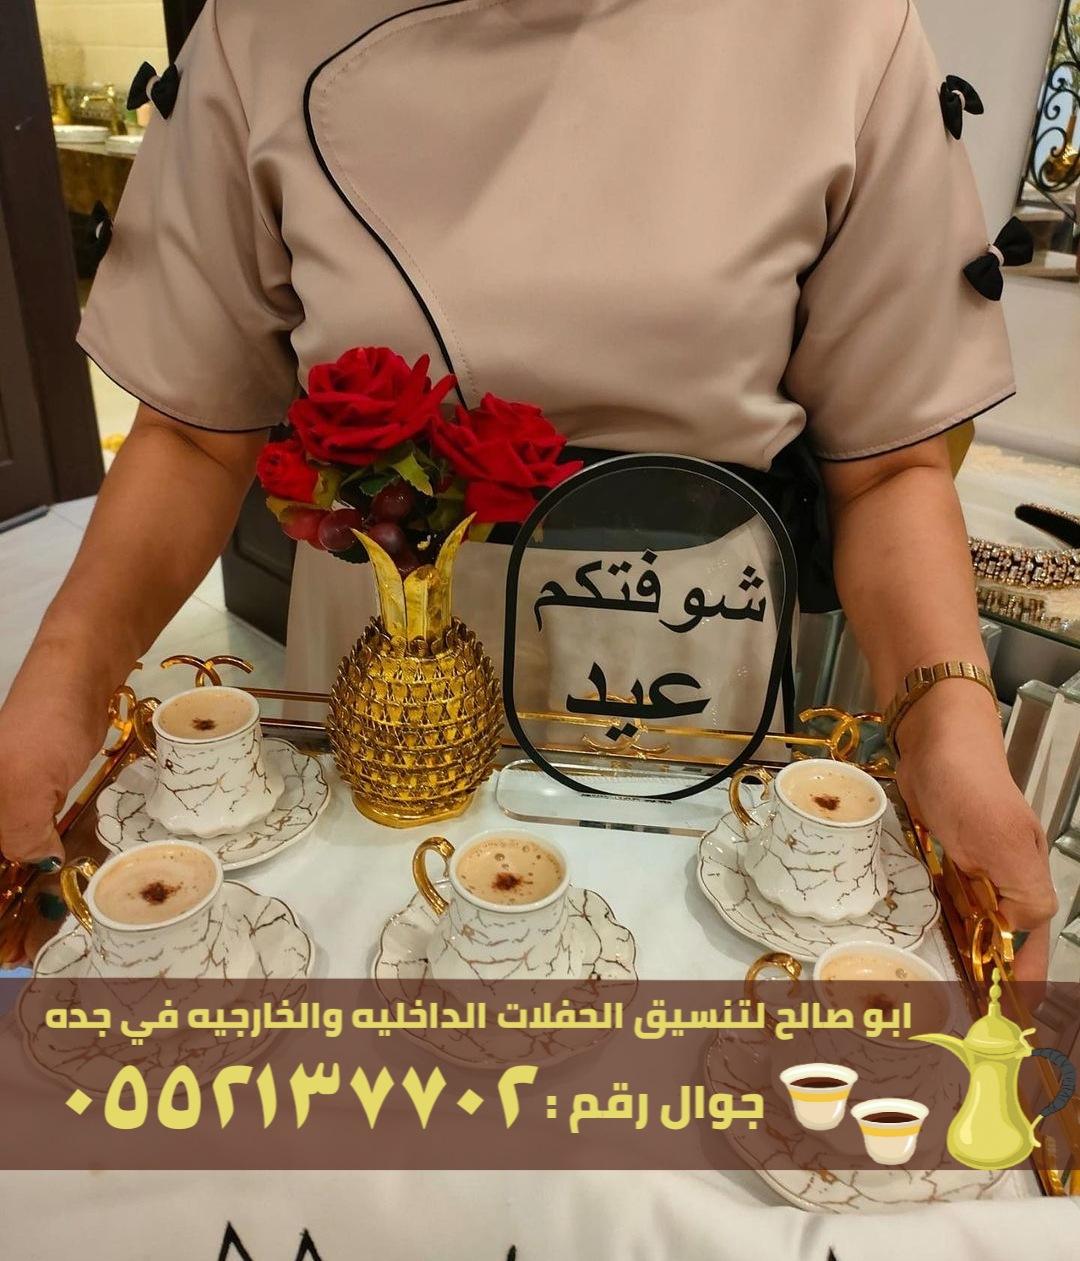 صبابات قهوة و قهوجيين في جدة, 0552137702  440861680